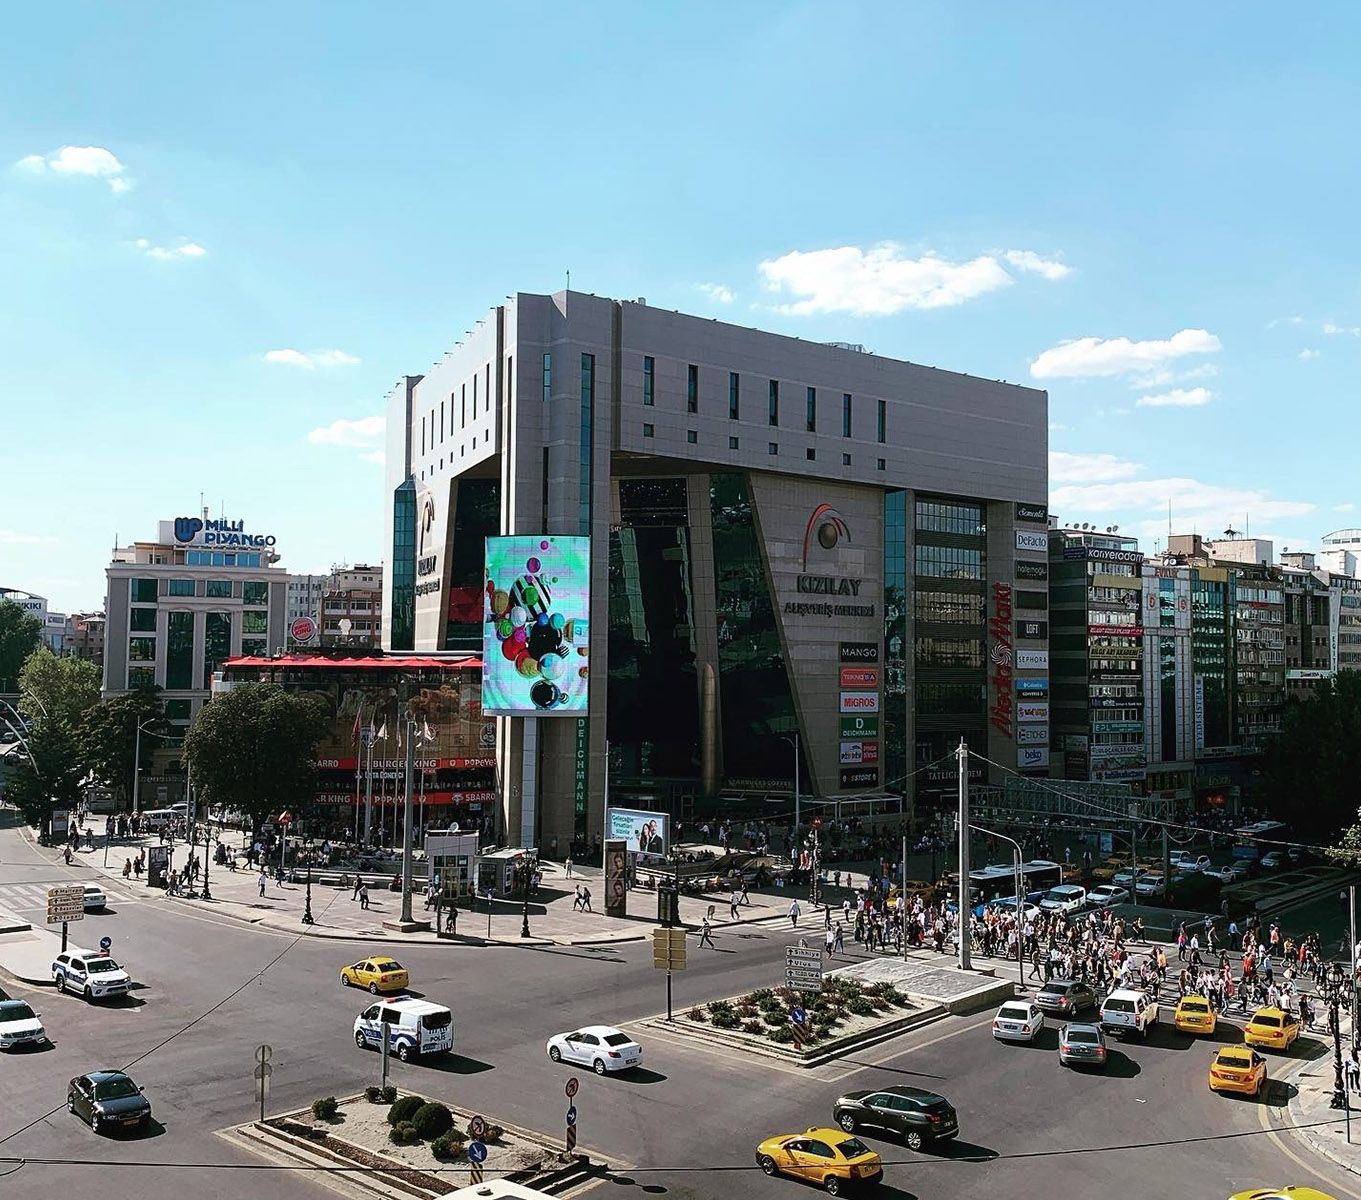 Şehir İçi Keşif: Kızılay’daki Otelden Ankara’nın En İyi Alışveriş ve Restoranlarına Yakın Bakış